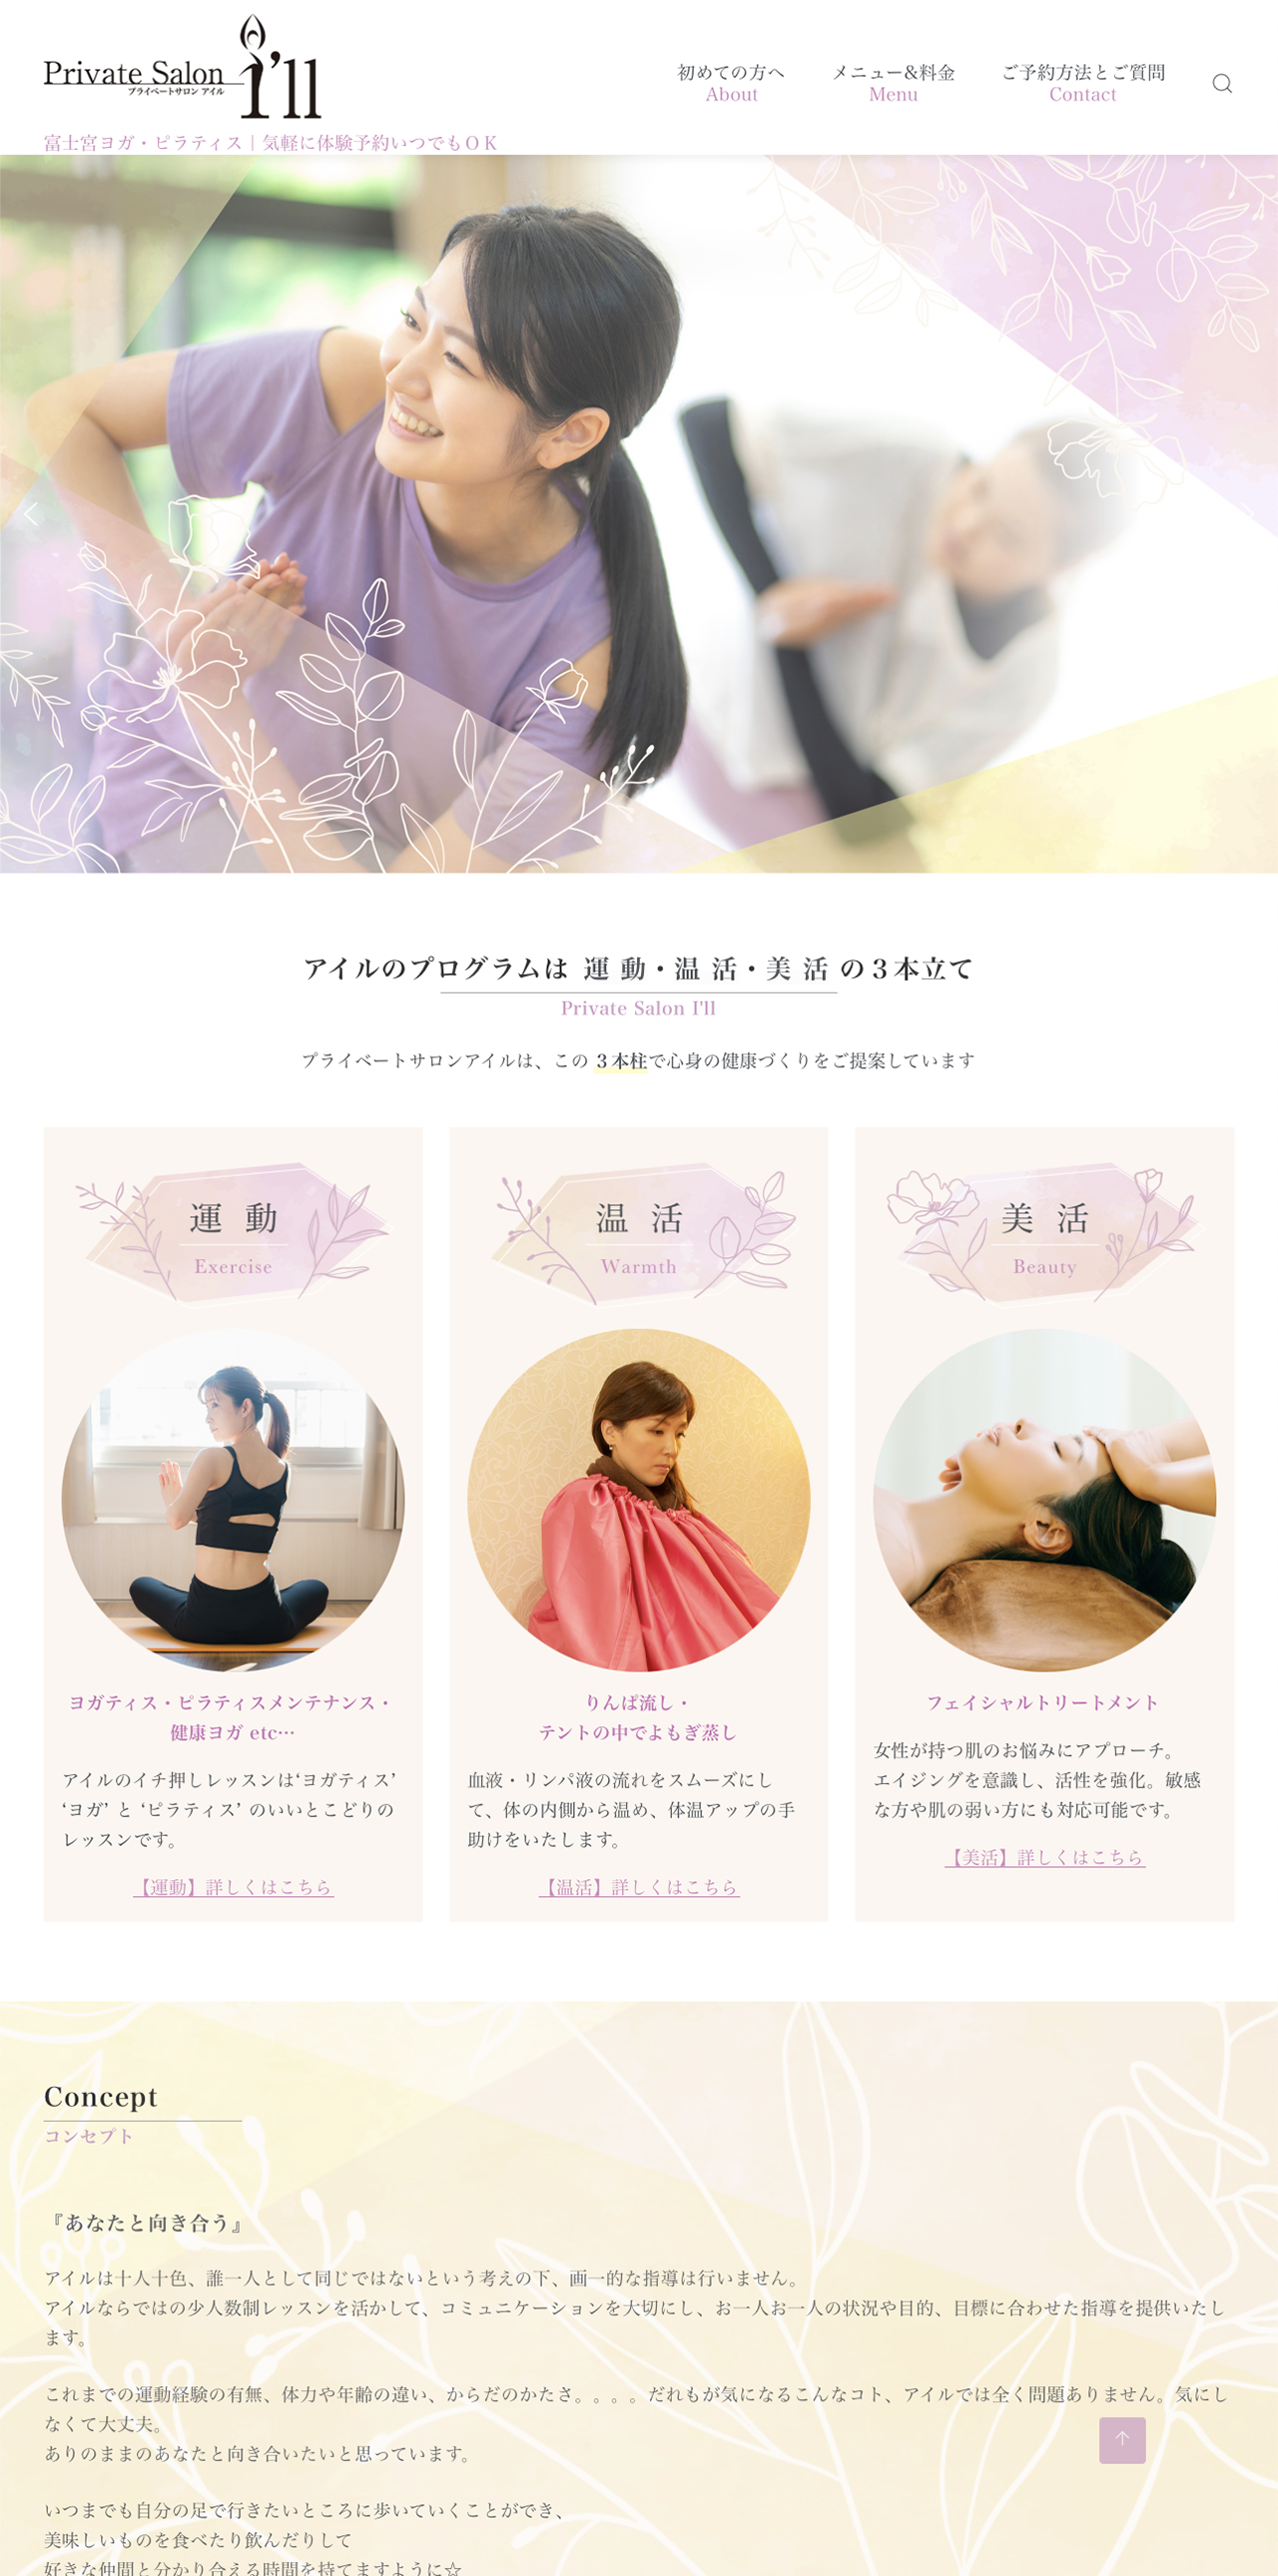 富士宮市の女性専用プライベートサロンアイル様ホームページデザイン